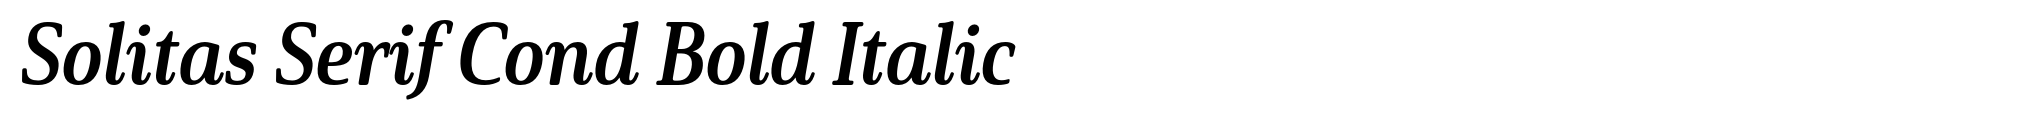 Solitas Serif Cond Bold Italic image